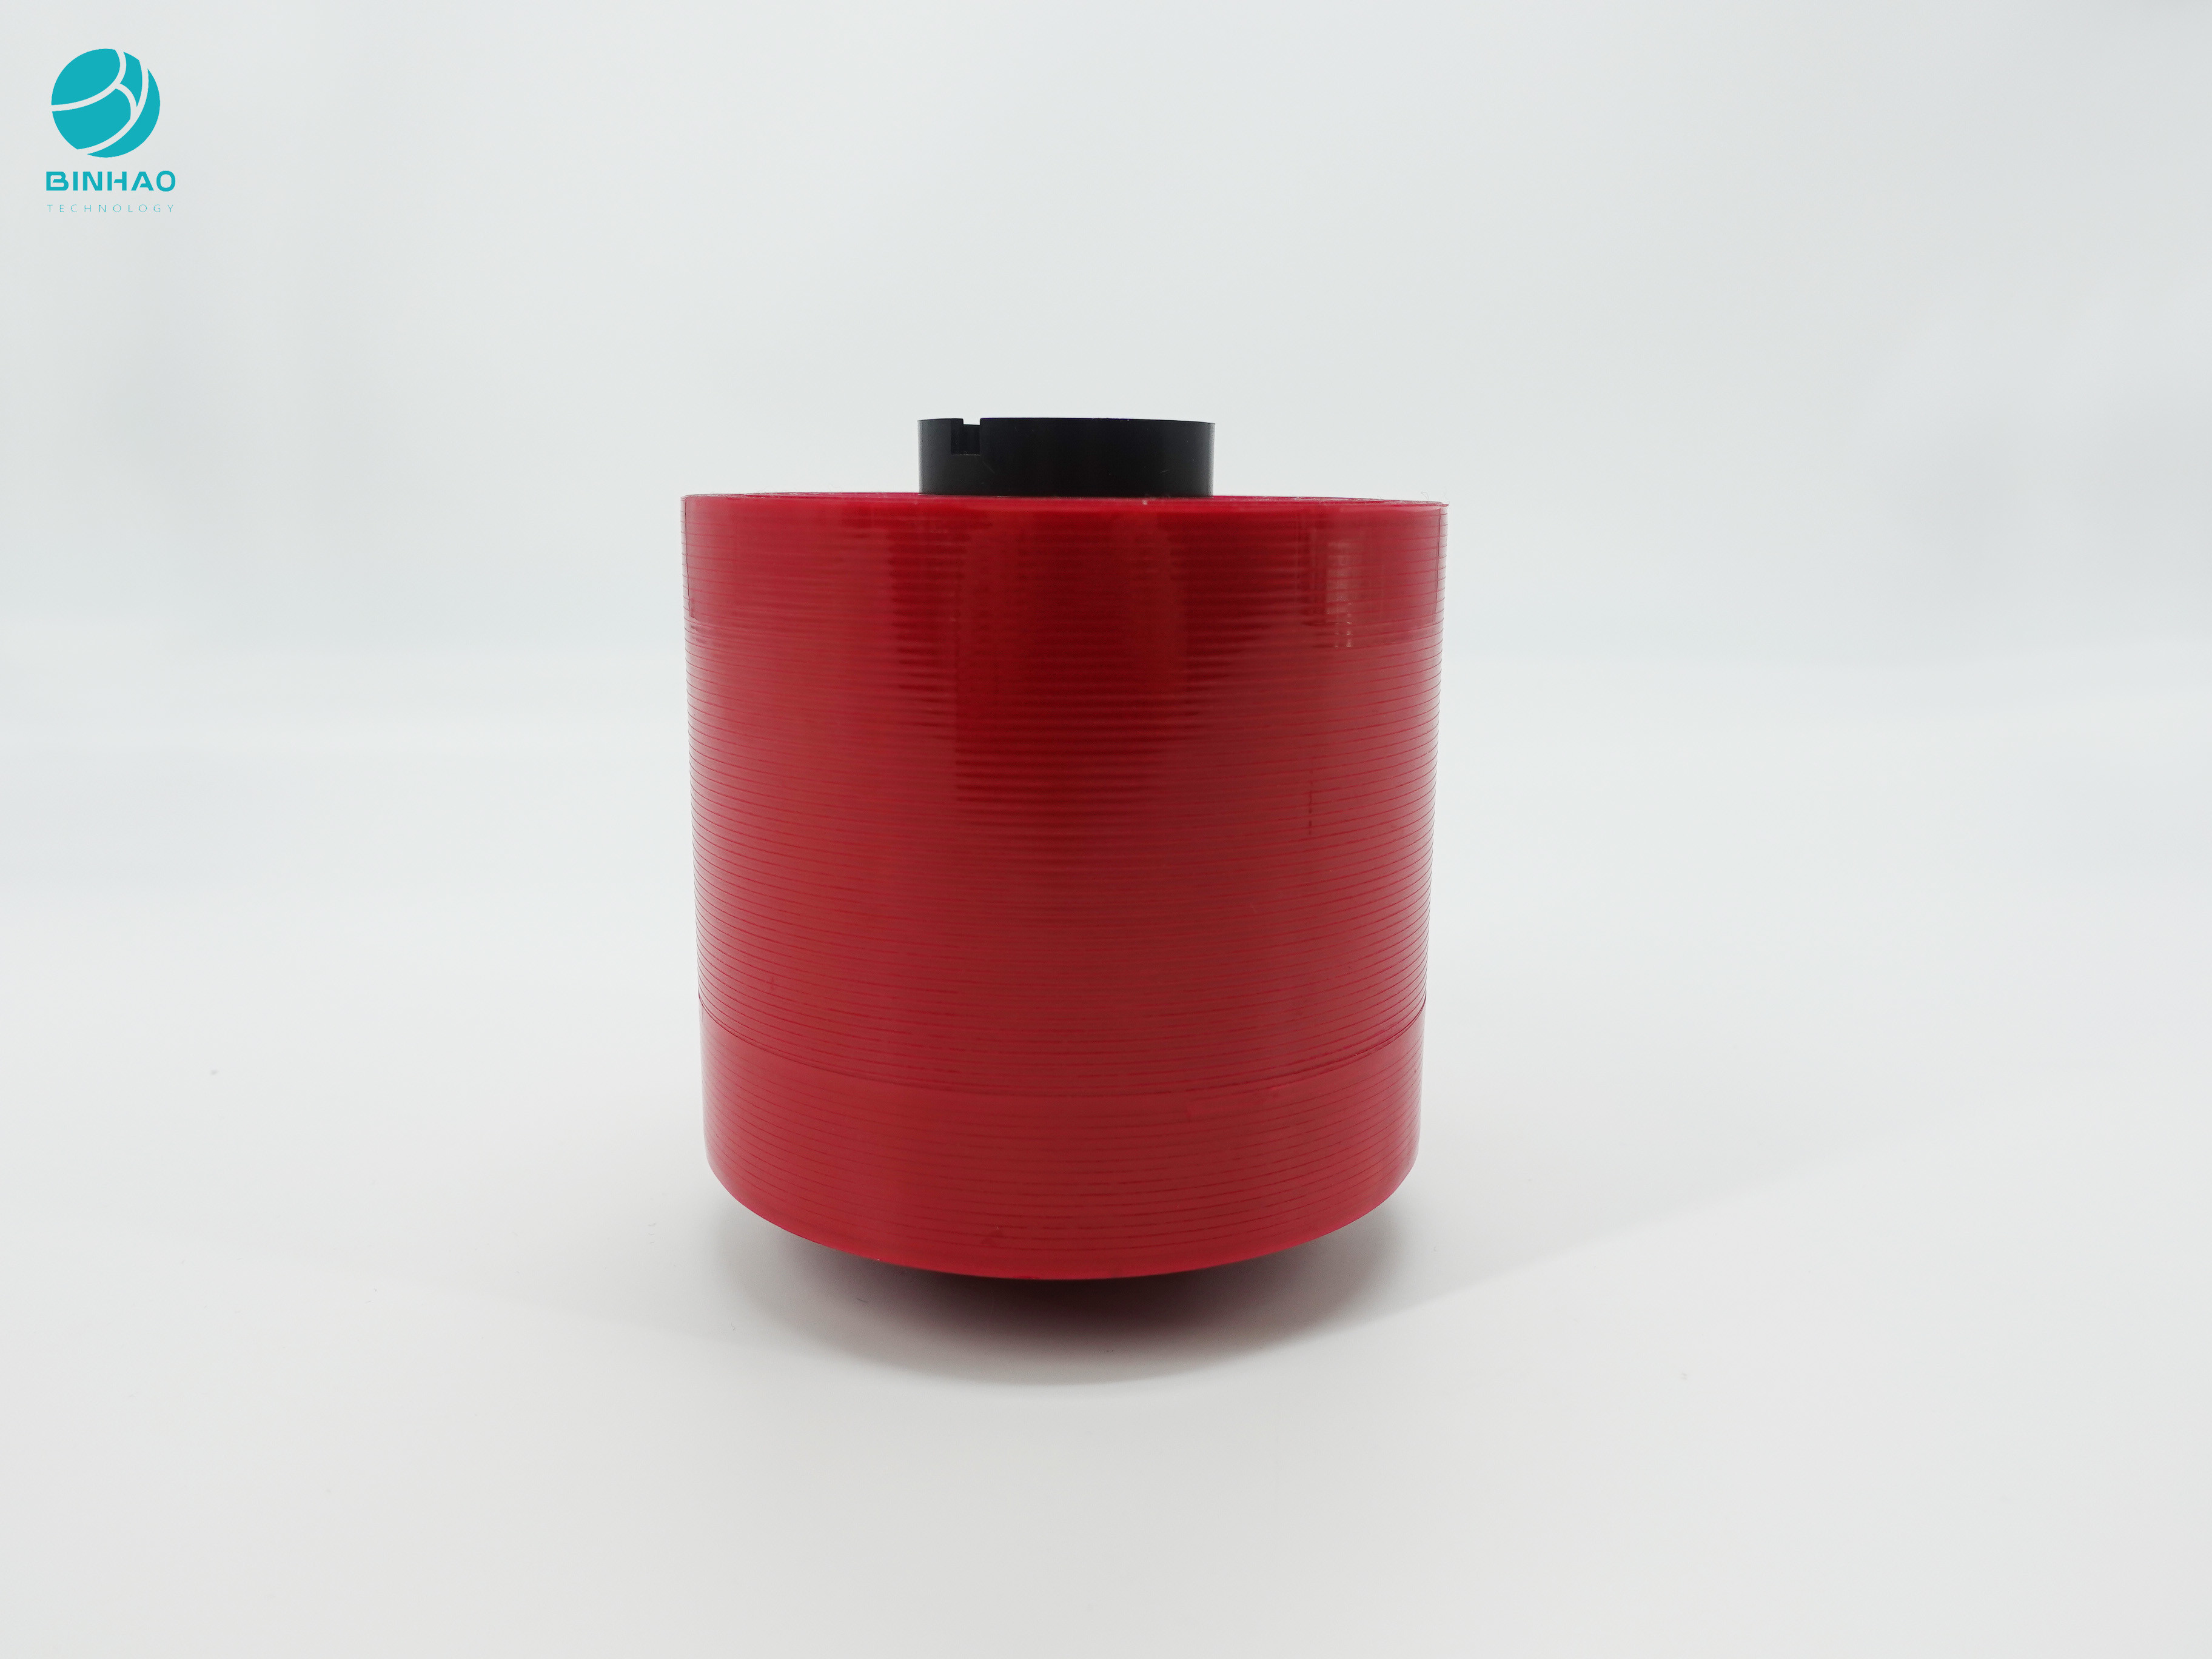 2.5mm βαθιά - κόκκινη ταινία δακρυ'ων ασφάλειας Bopp για τη σφράγιση Pakage και εύκολο ανοικτό